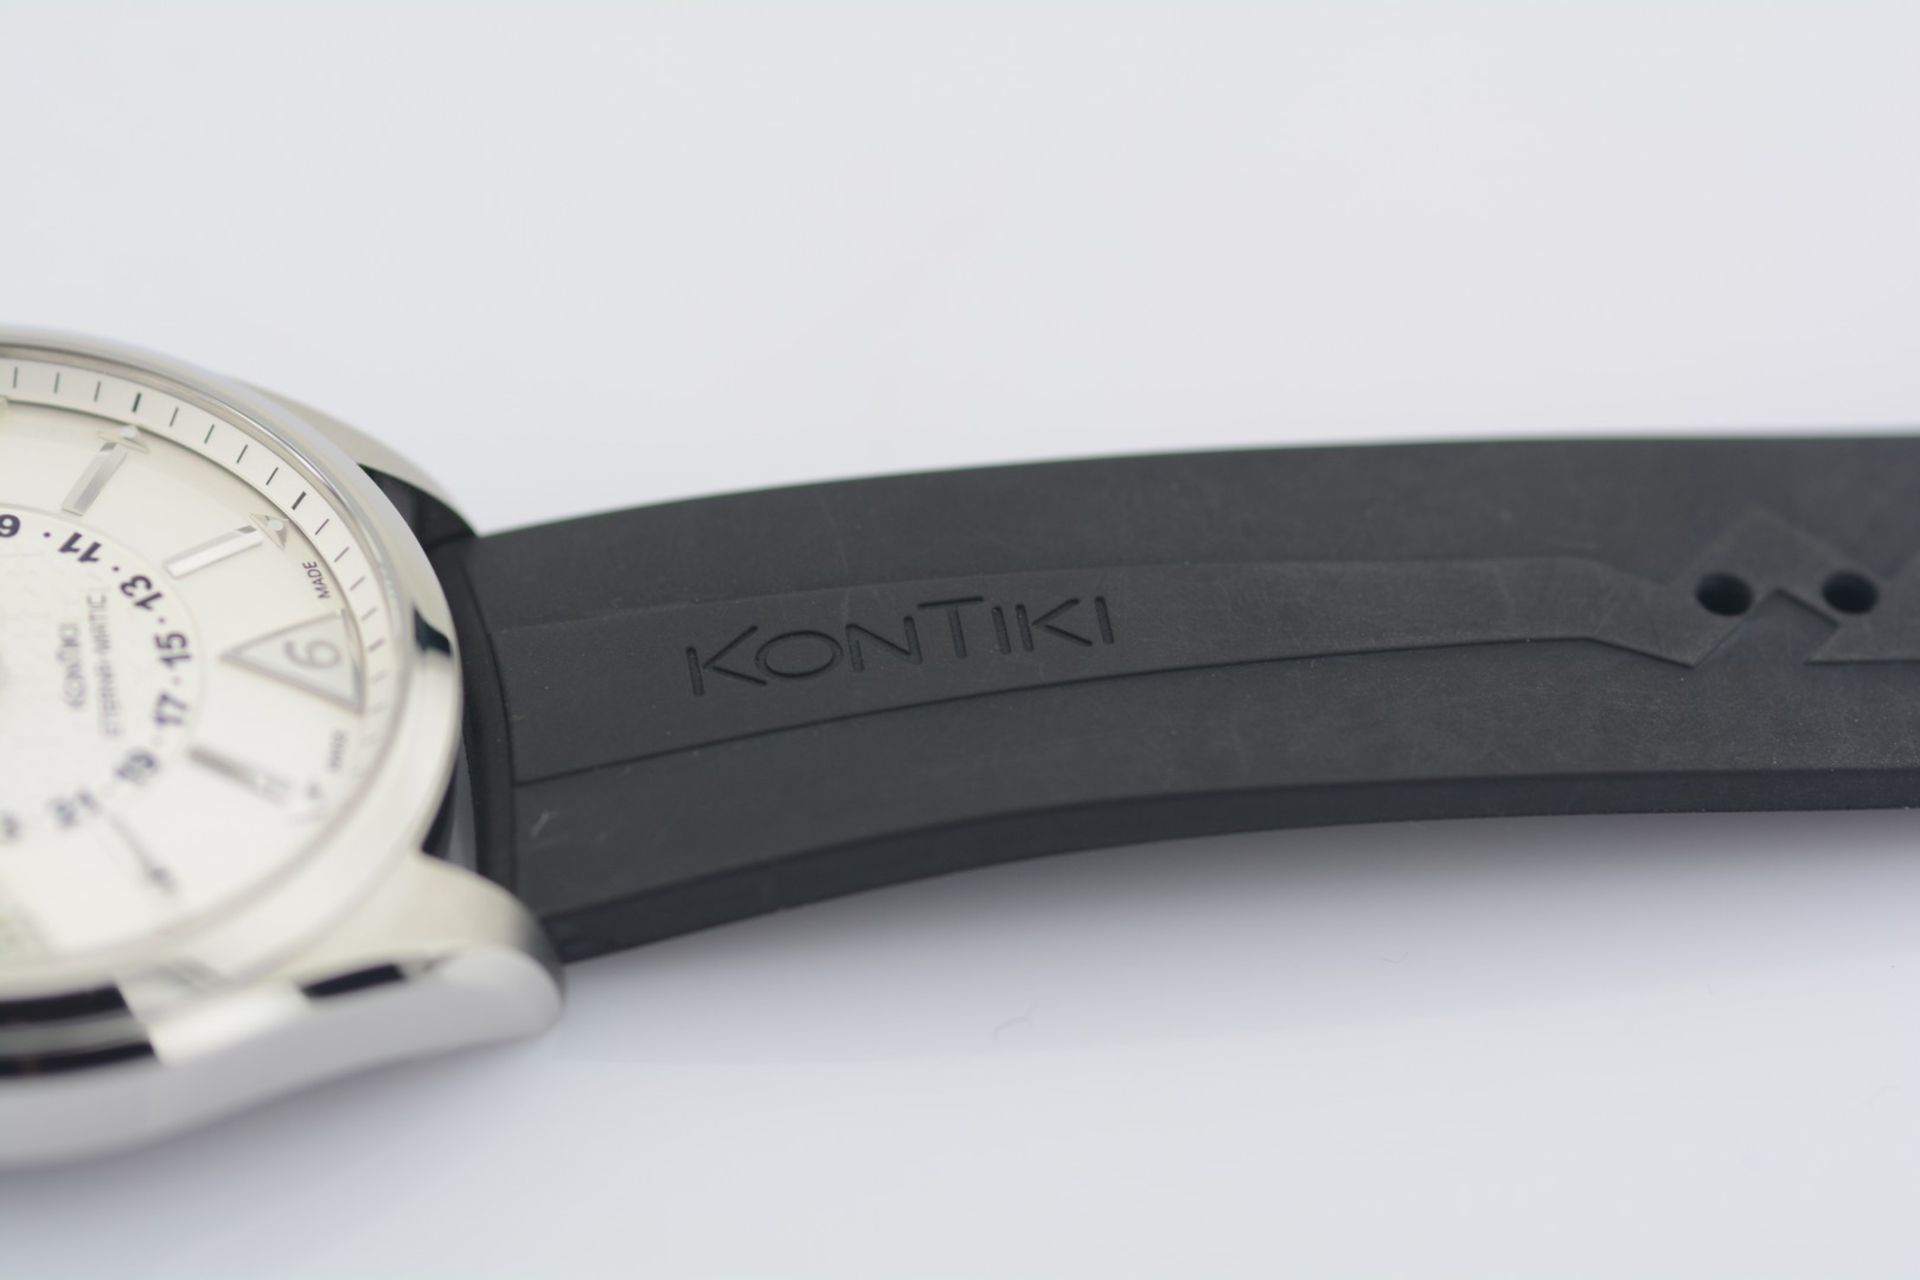 Eterna-Matic / Kontiki - Four Hands - Gentlemen's Steel Wristwatch - Image 7 of 8